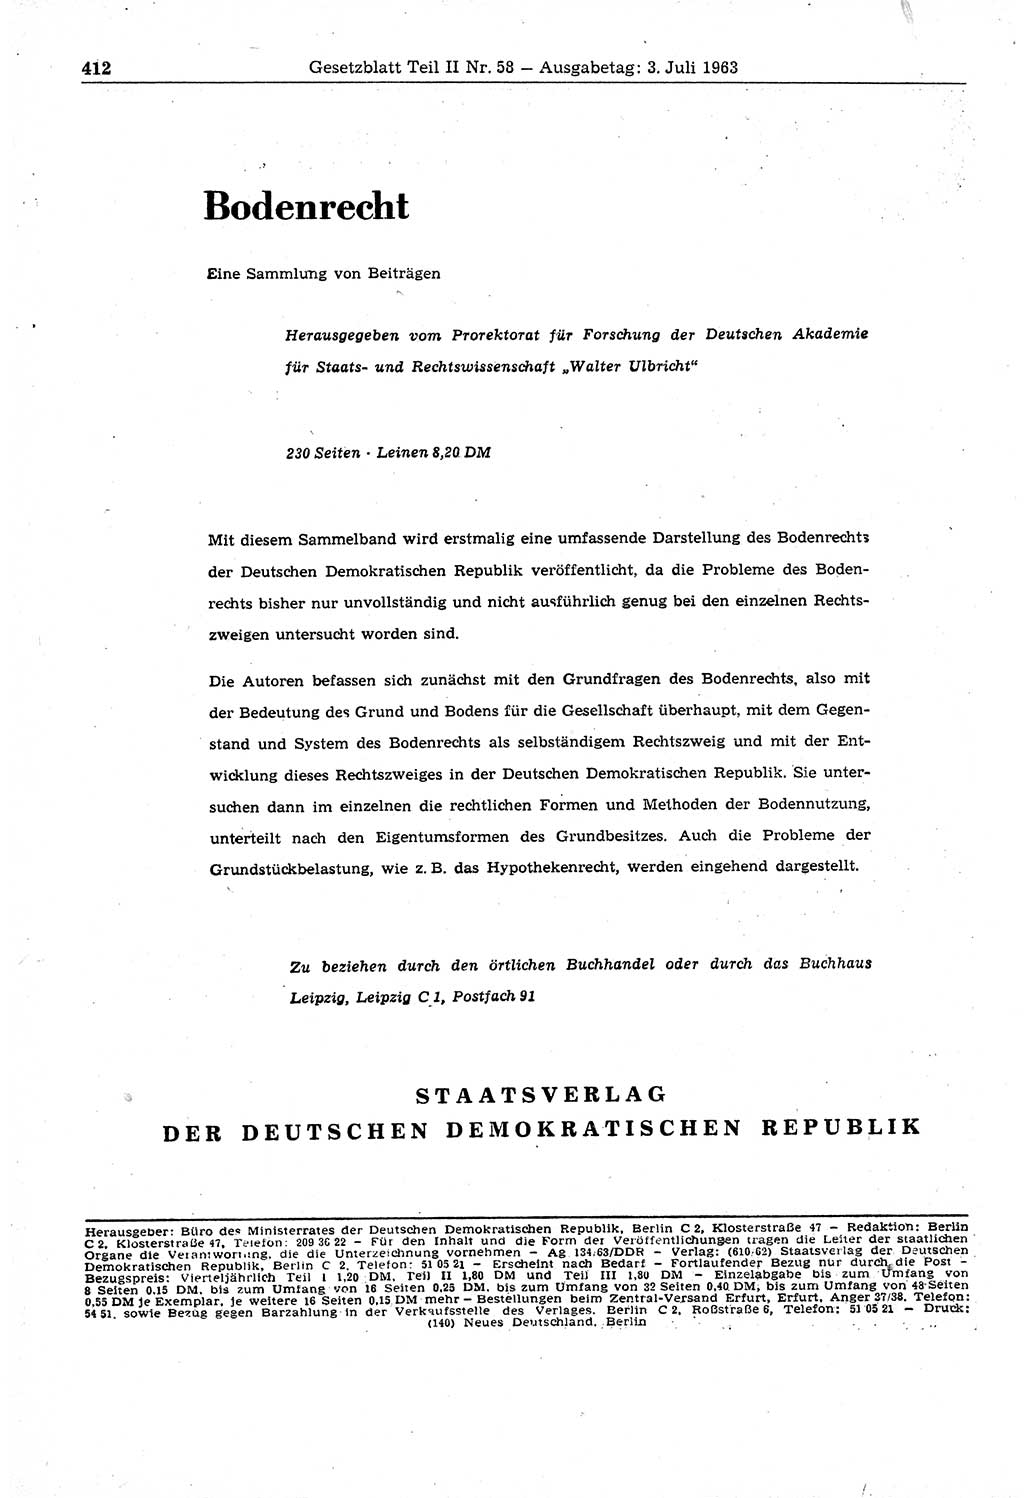 Gesetzblatt (GBl.) der Deutschen Demokratischen Republik (DDR) Teil ⅠⅠ 1963, Seite 412 (GBl. DDR ⅠⅠ 1963, S. 412)